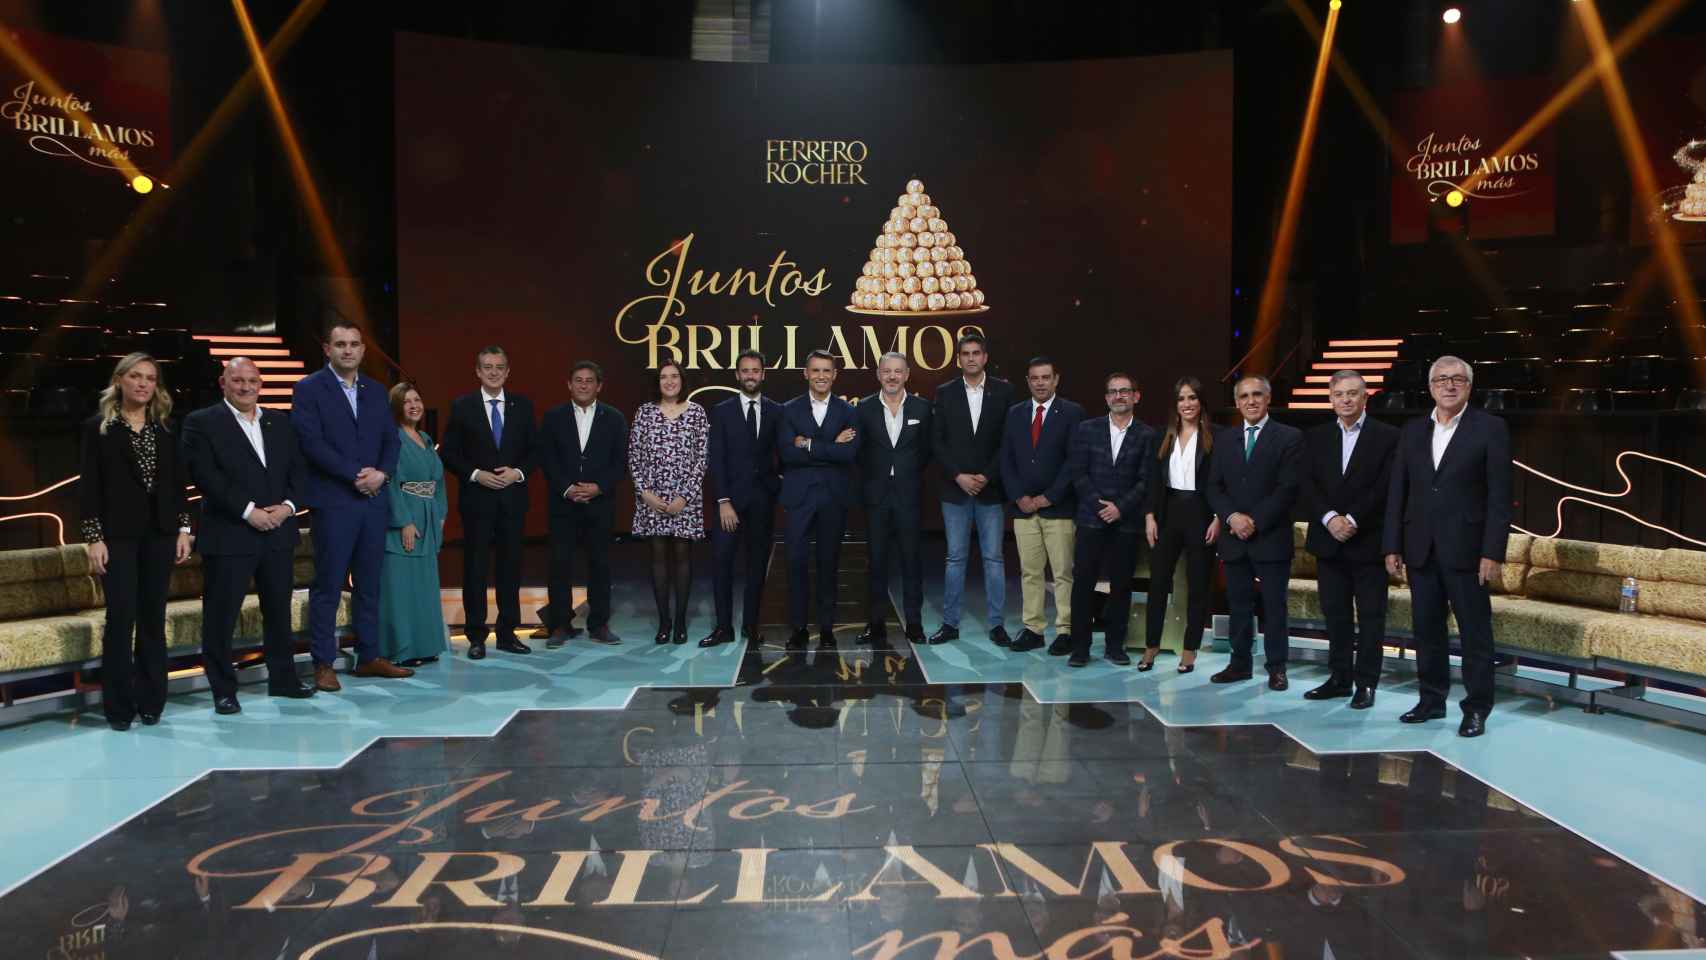 Alcaldes que participan en el concurso navideño de Ferrero